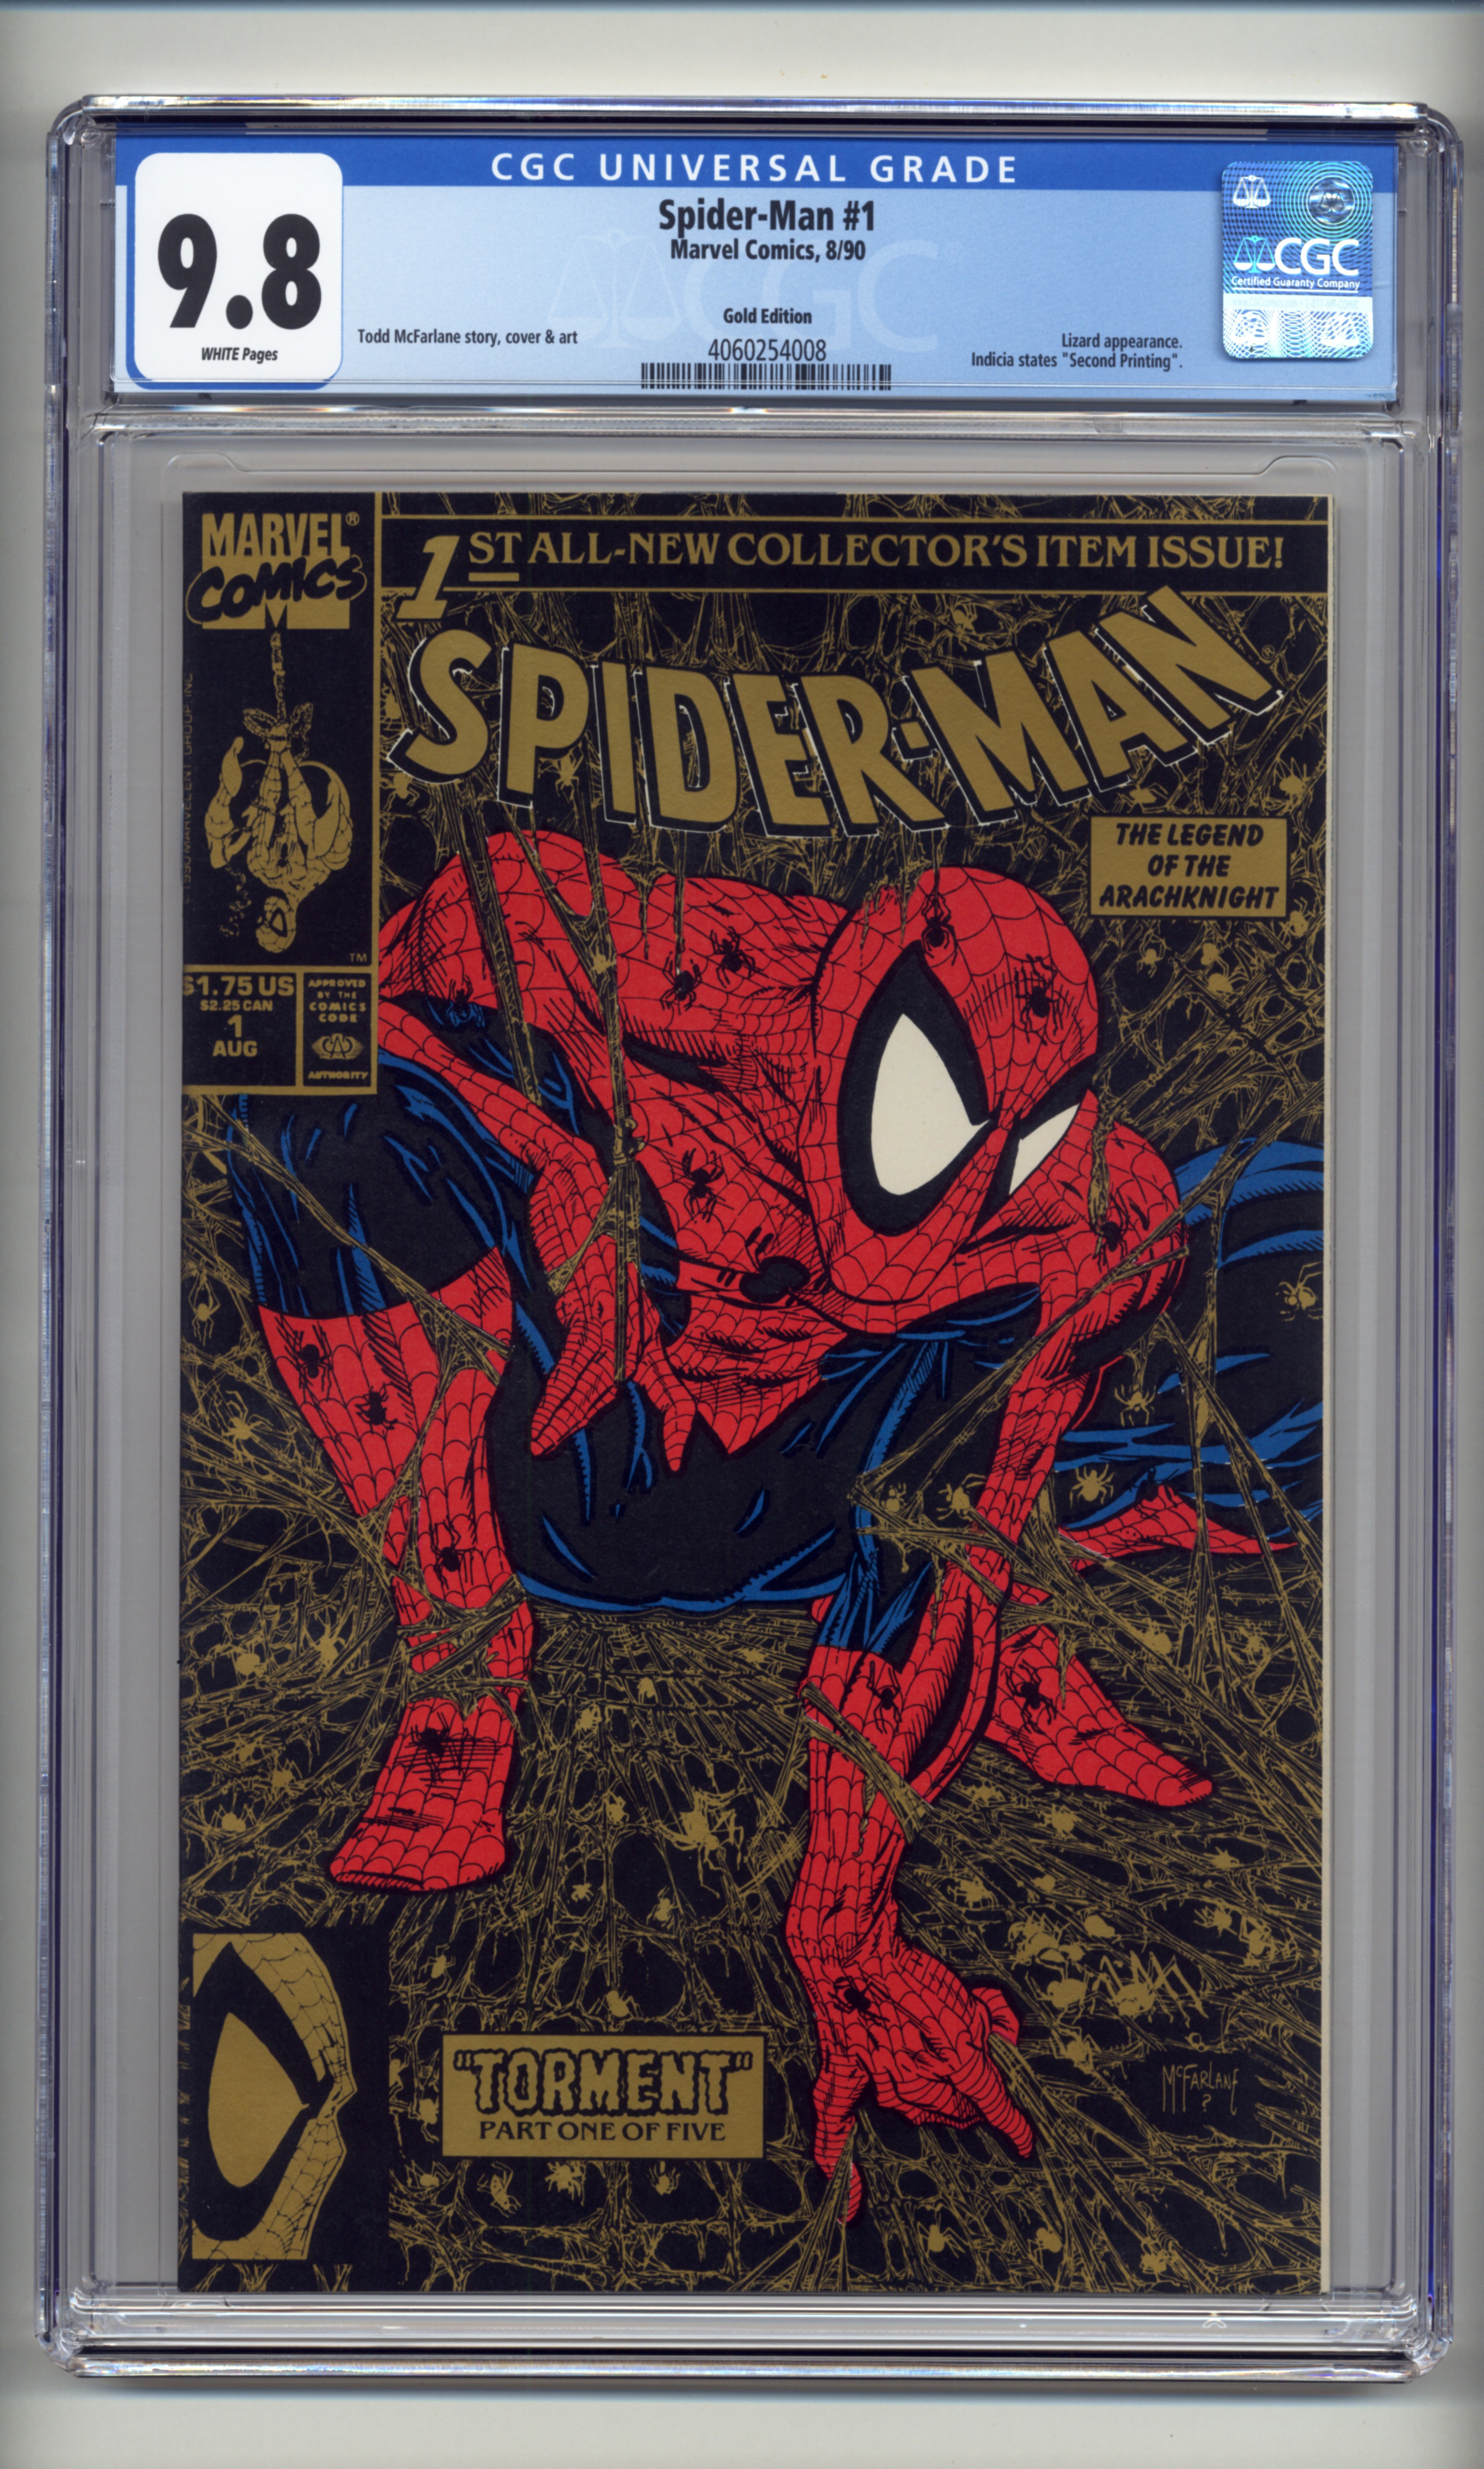 Spider-Man-1-Gold-4060254008-fc.jpg